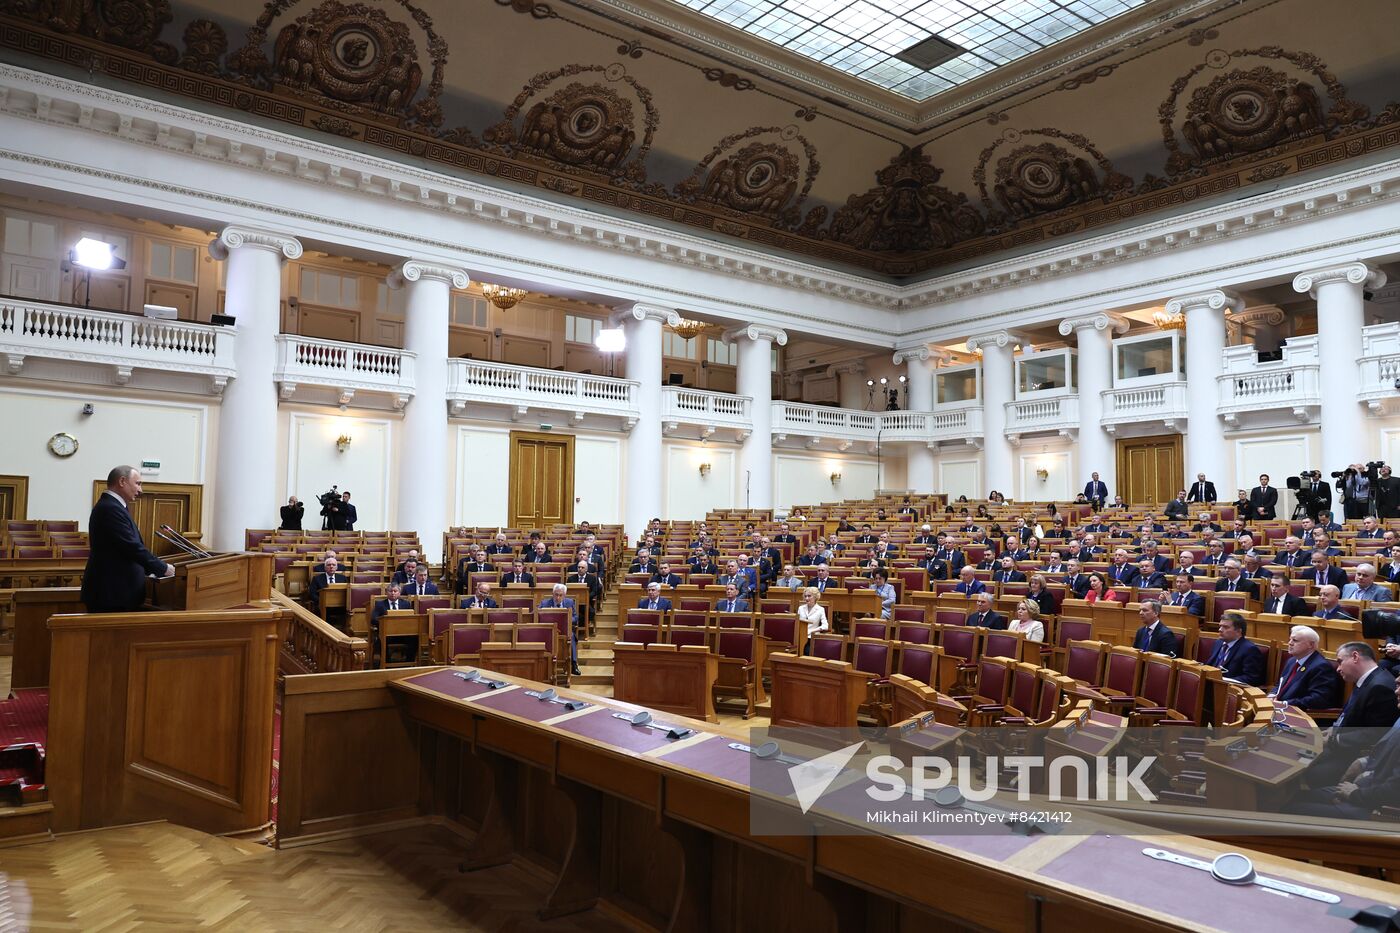 Russia Federal Assembly Legislators Council